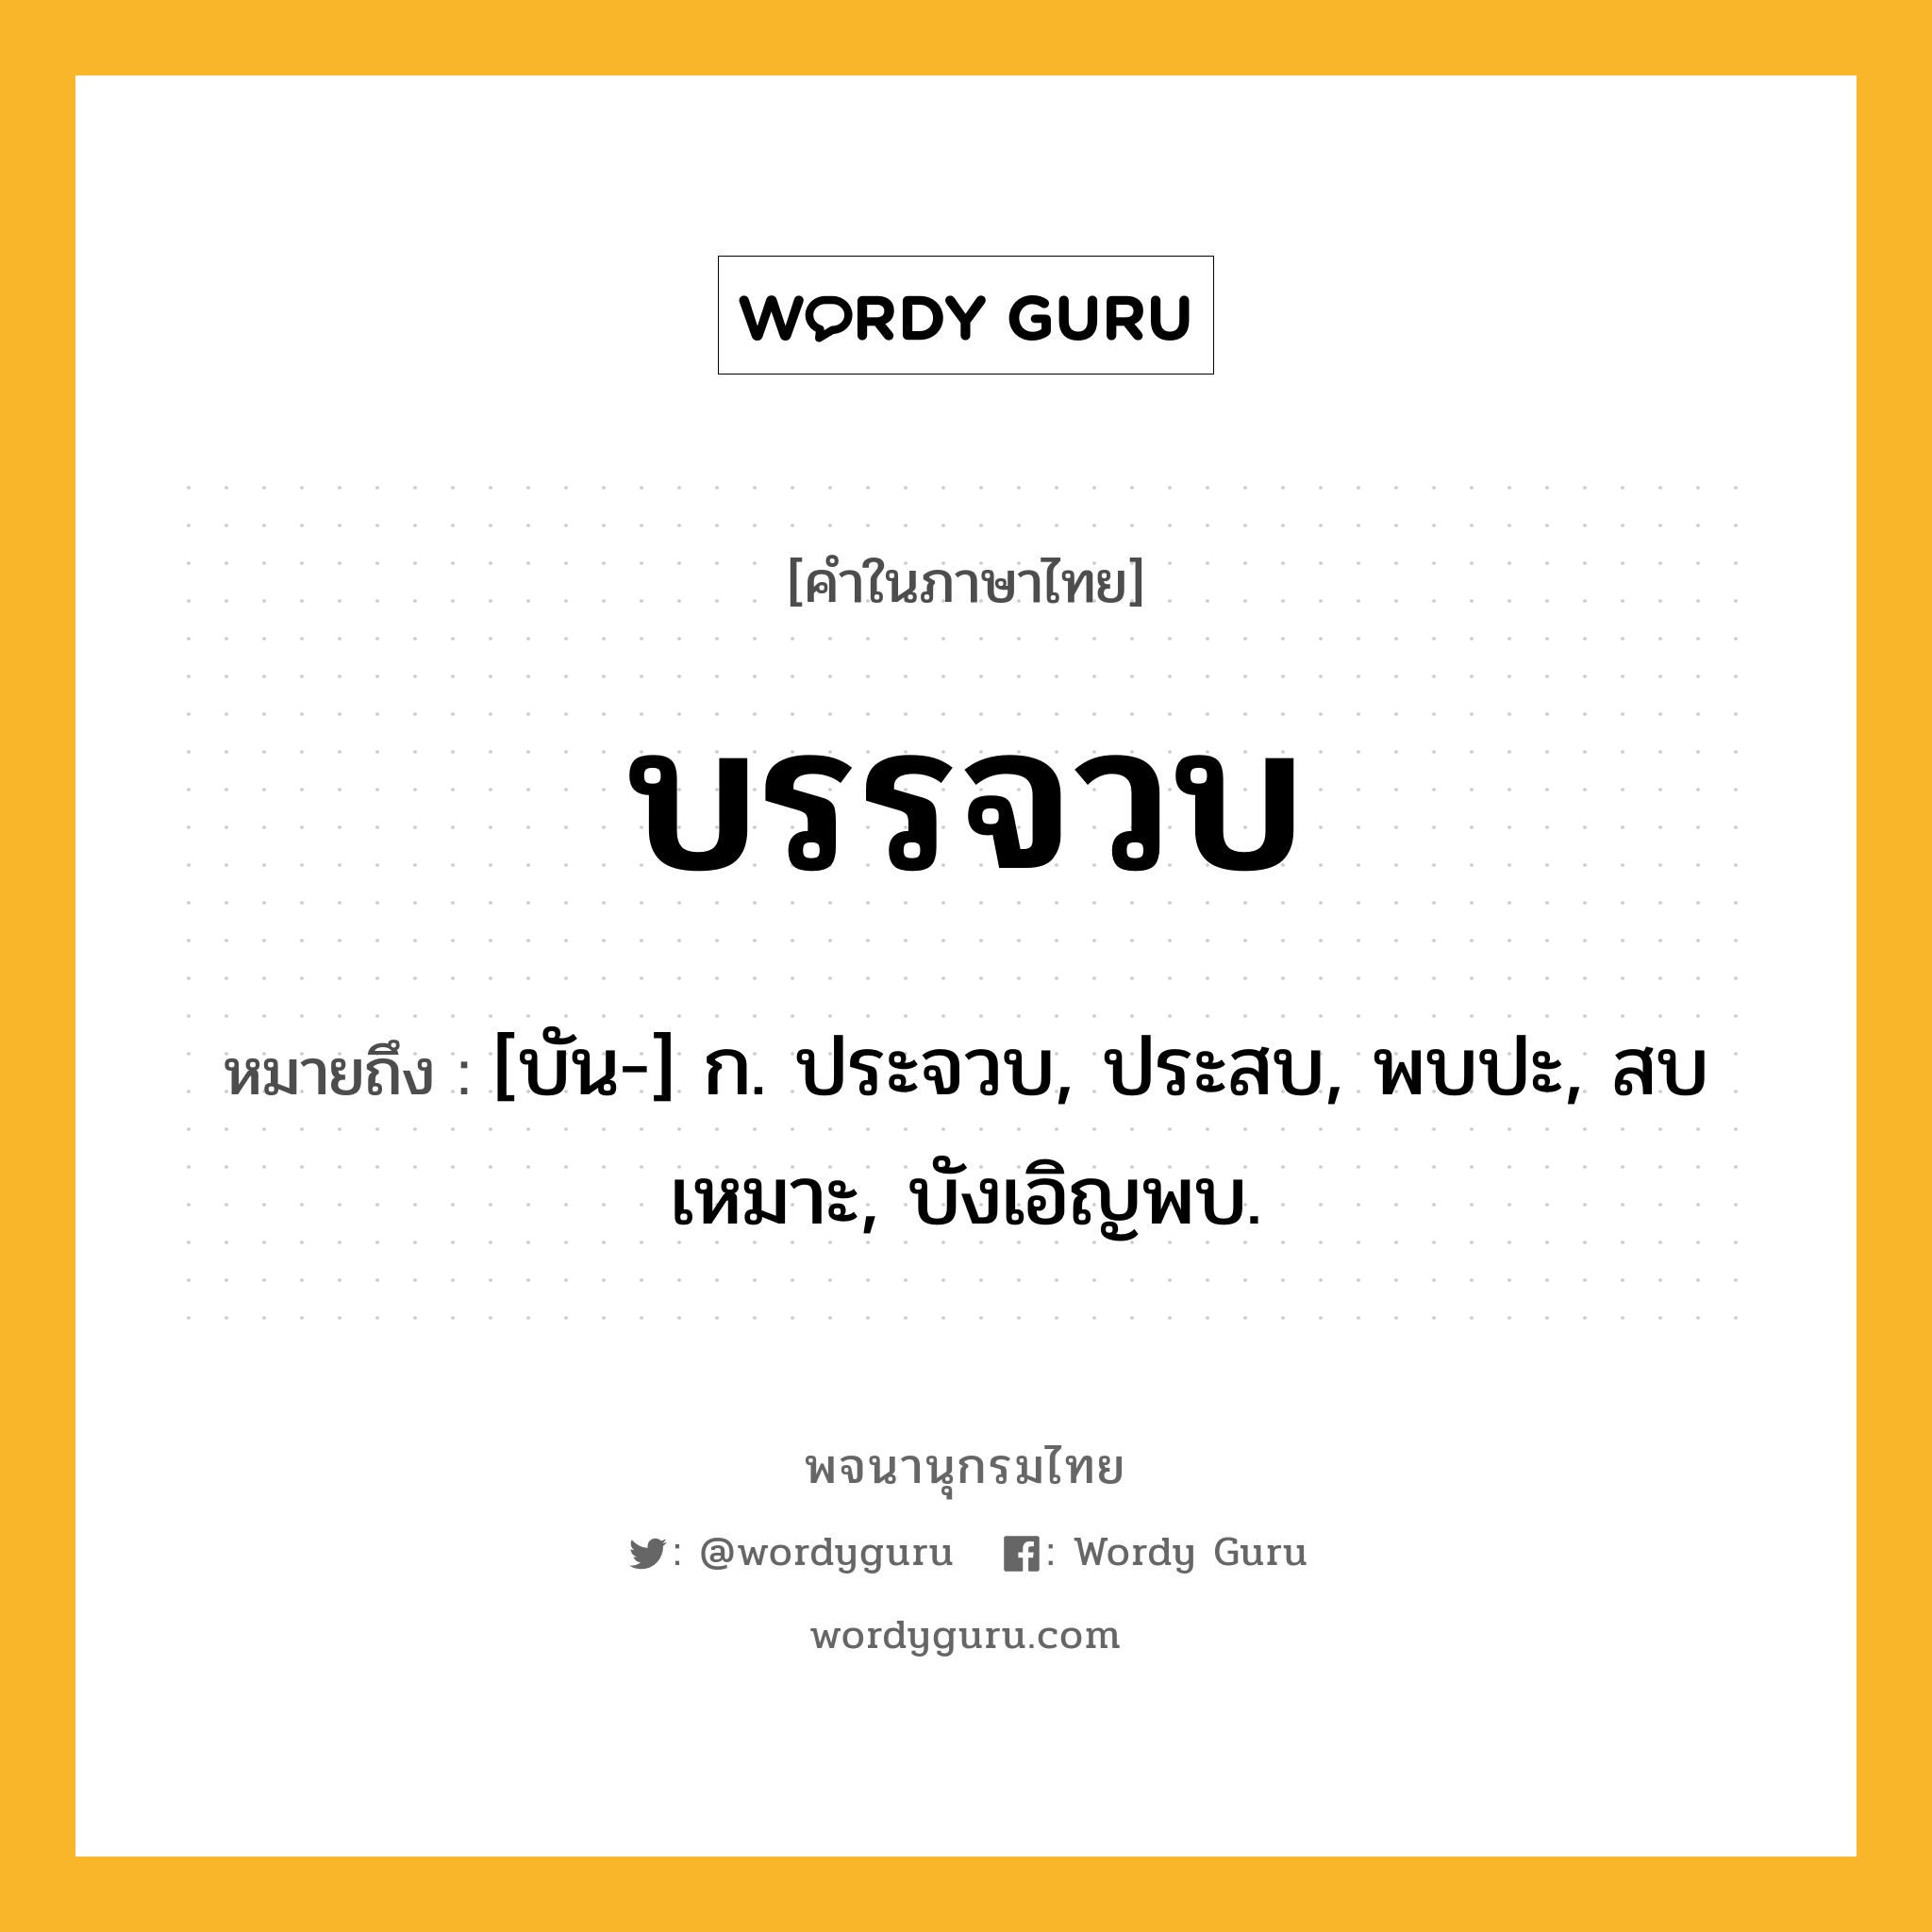 บรรจวบ หมายถึงอะไร?, คำในภาษาไทย บรรจวบ หมายถึง [บัน-] ก. ประจวบ, ประสบ, พบปะ, สบเหมาะ, บังเอิญพบ.